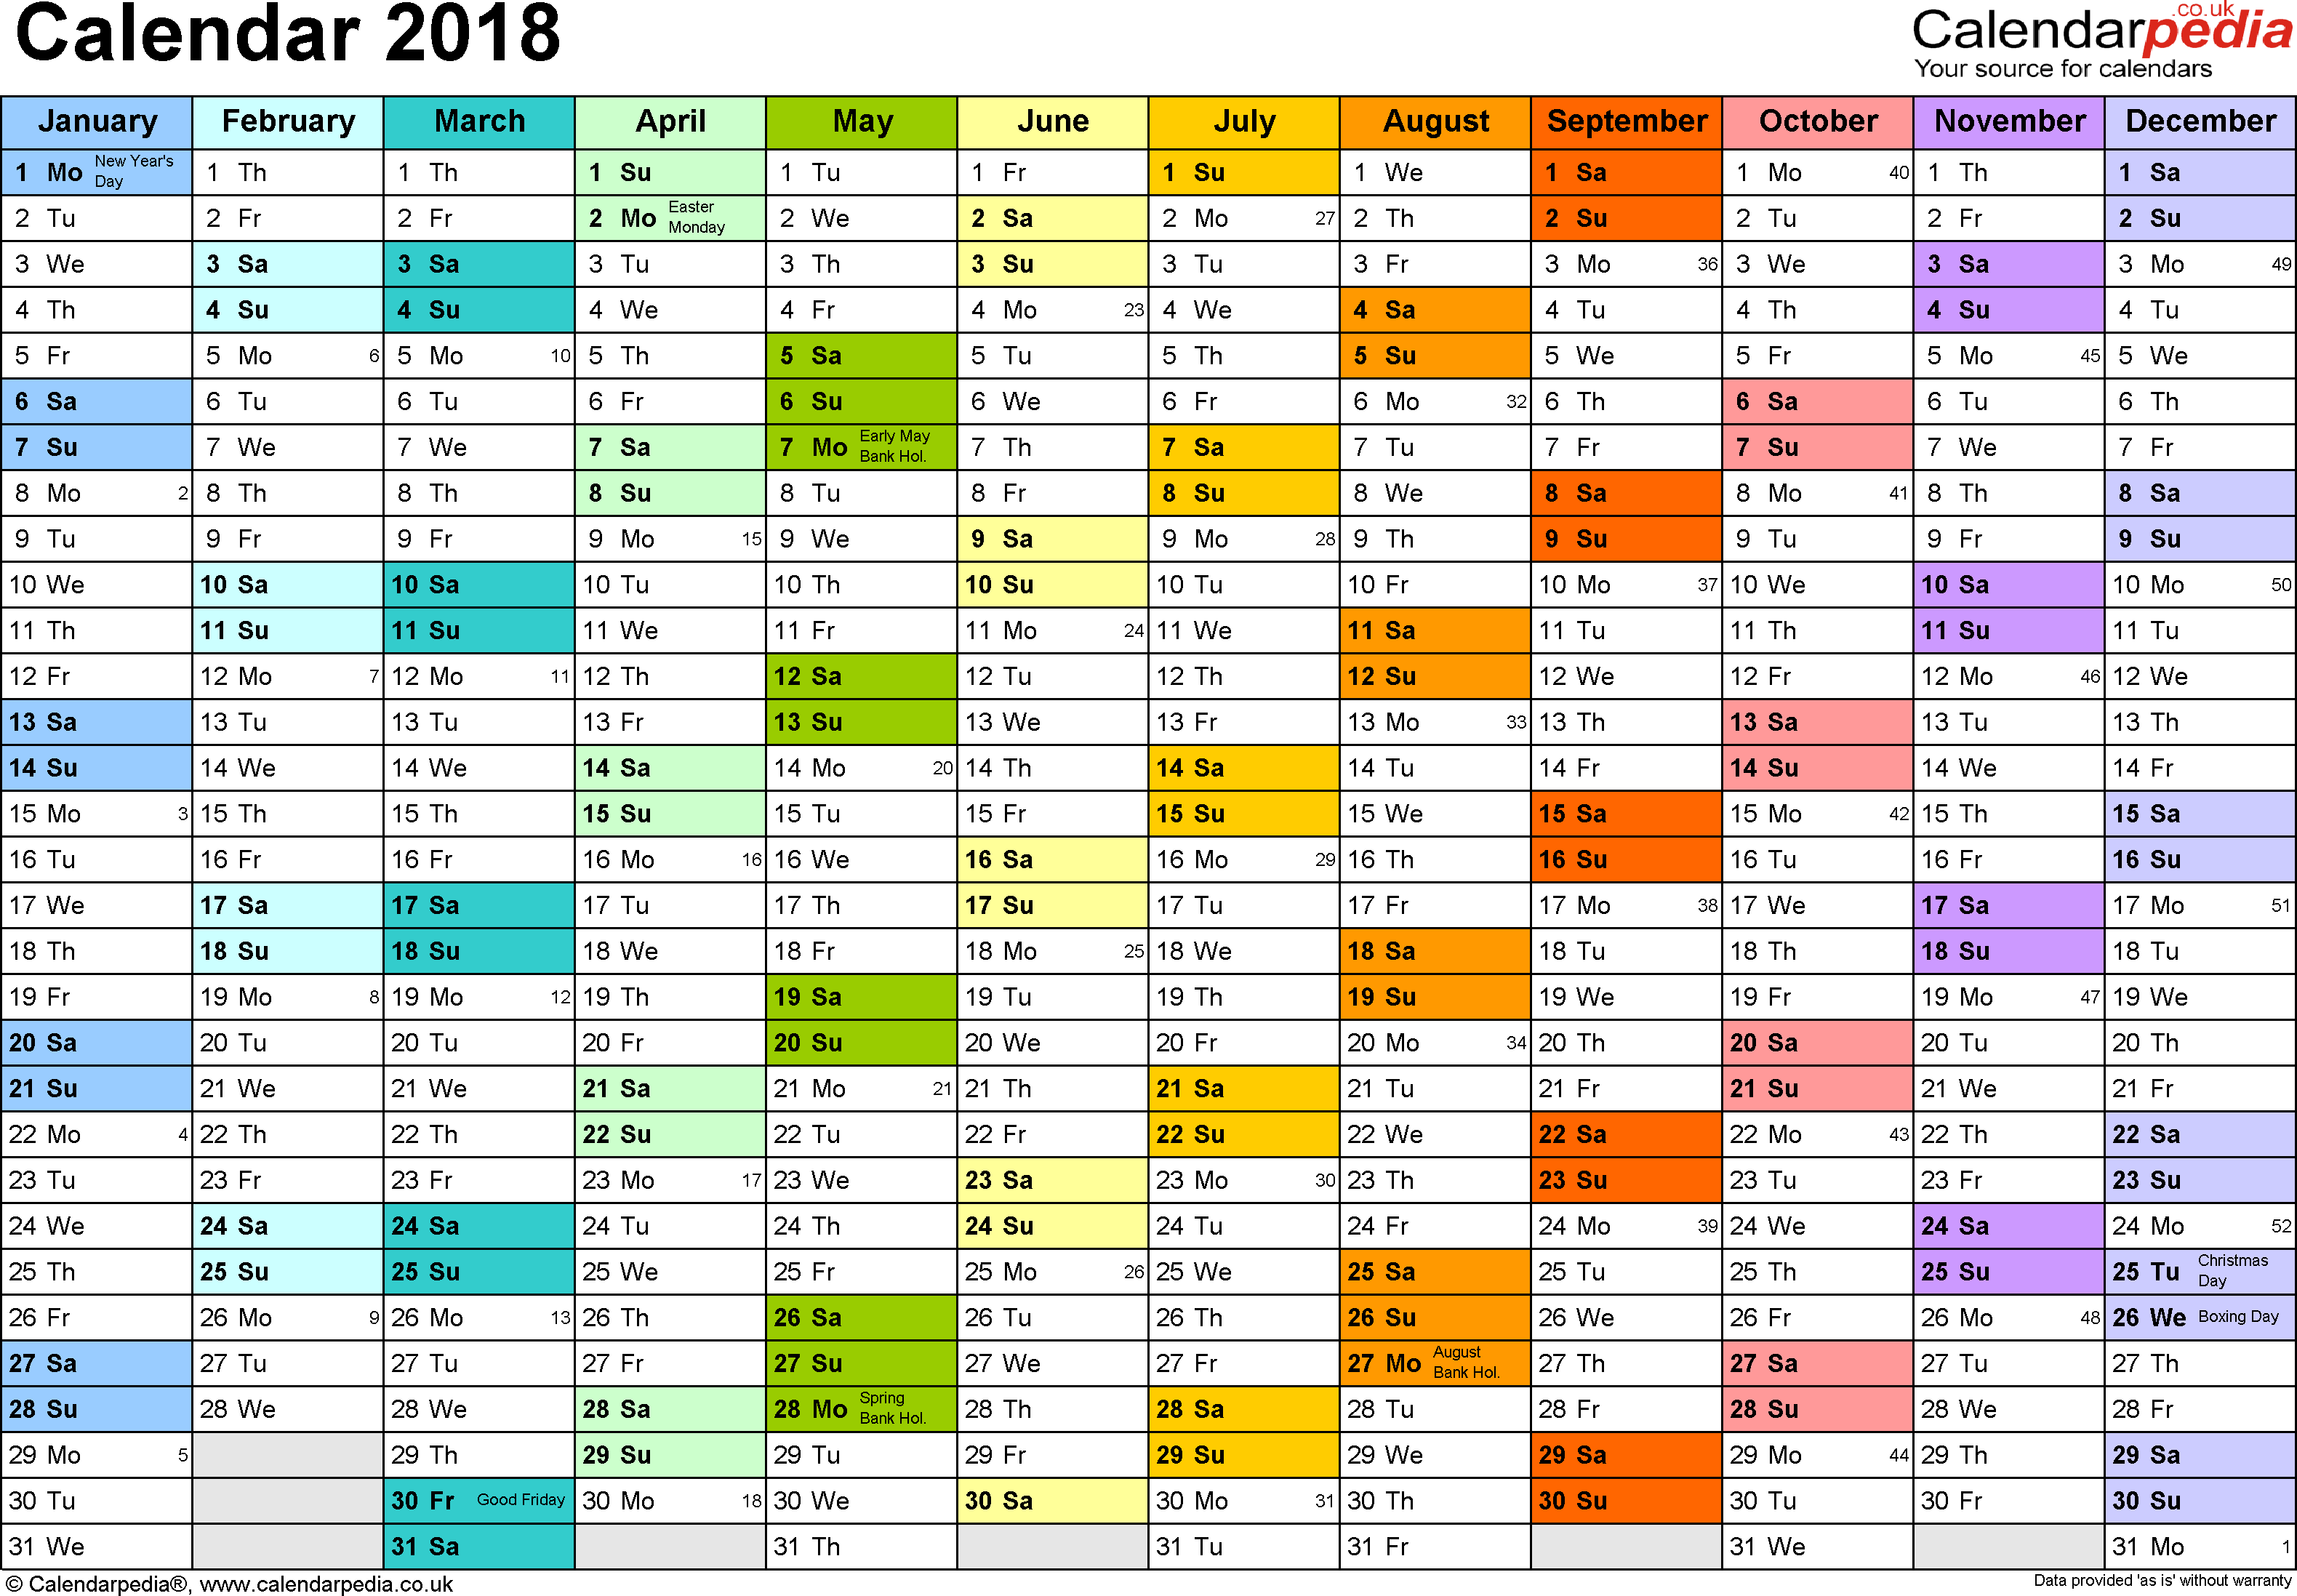 Excel Calendar 2018 (UK): 16 printable templates (xls/xlsx, free)